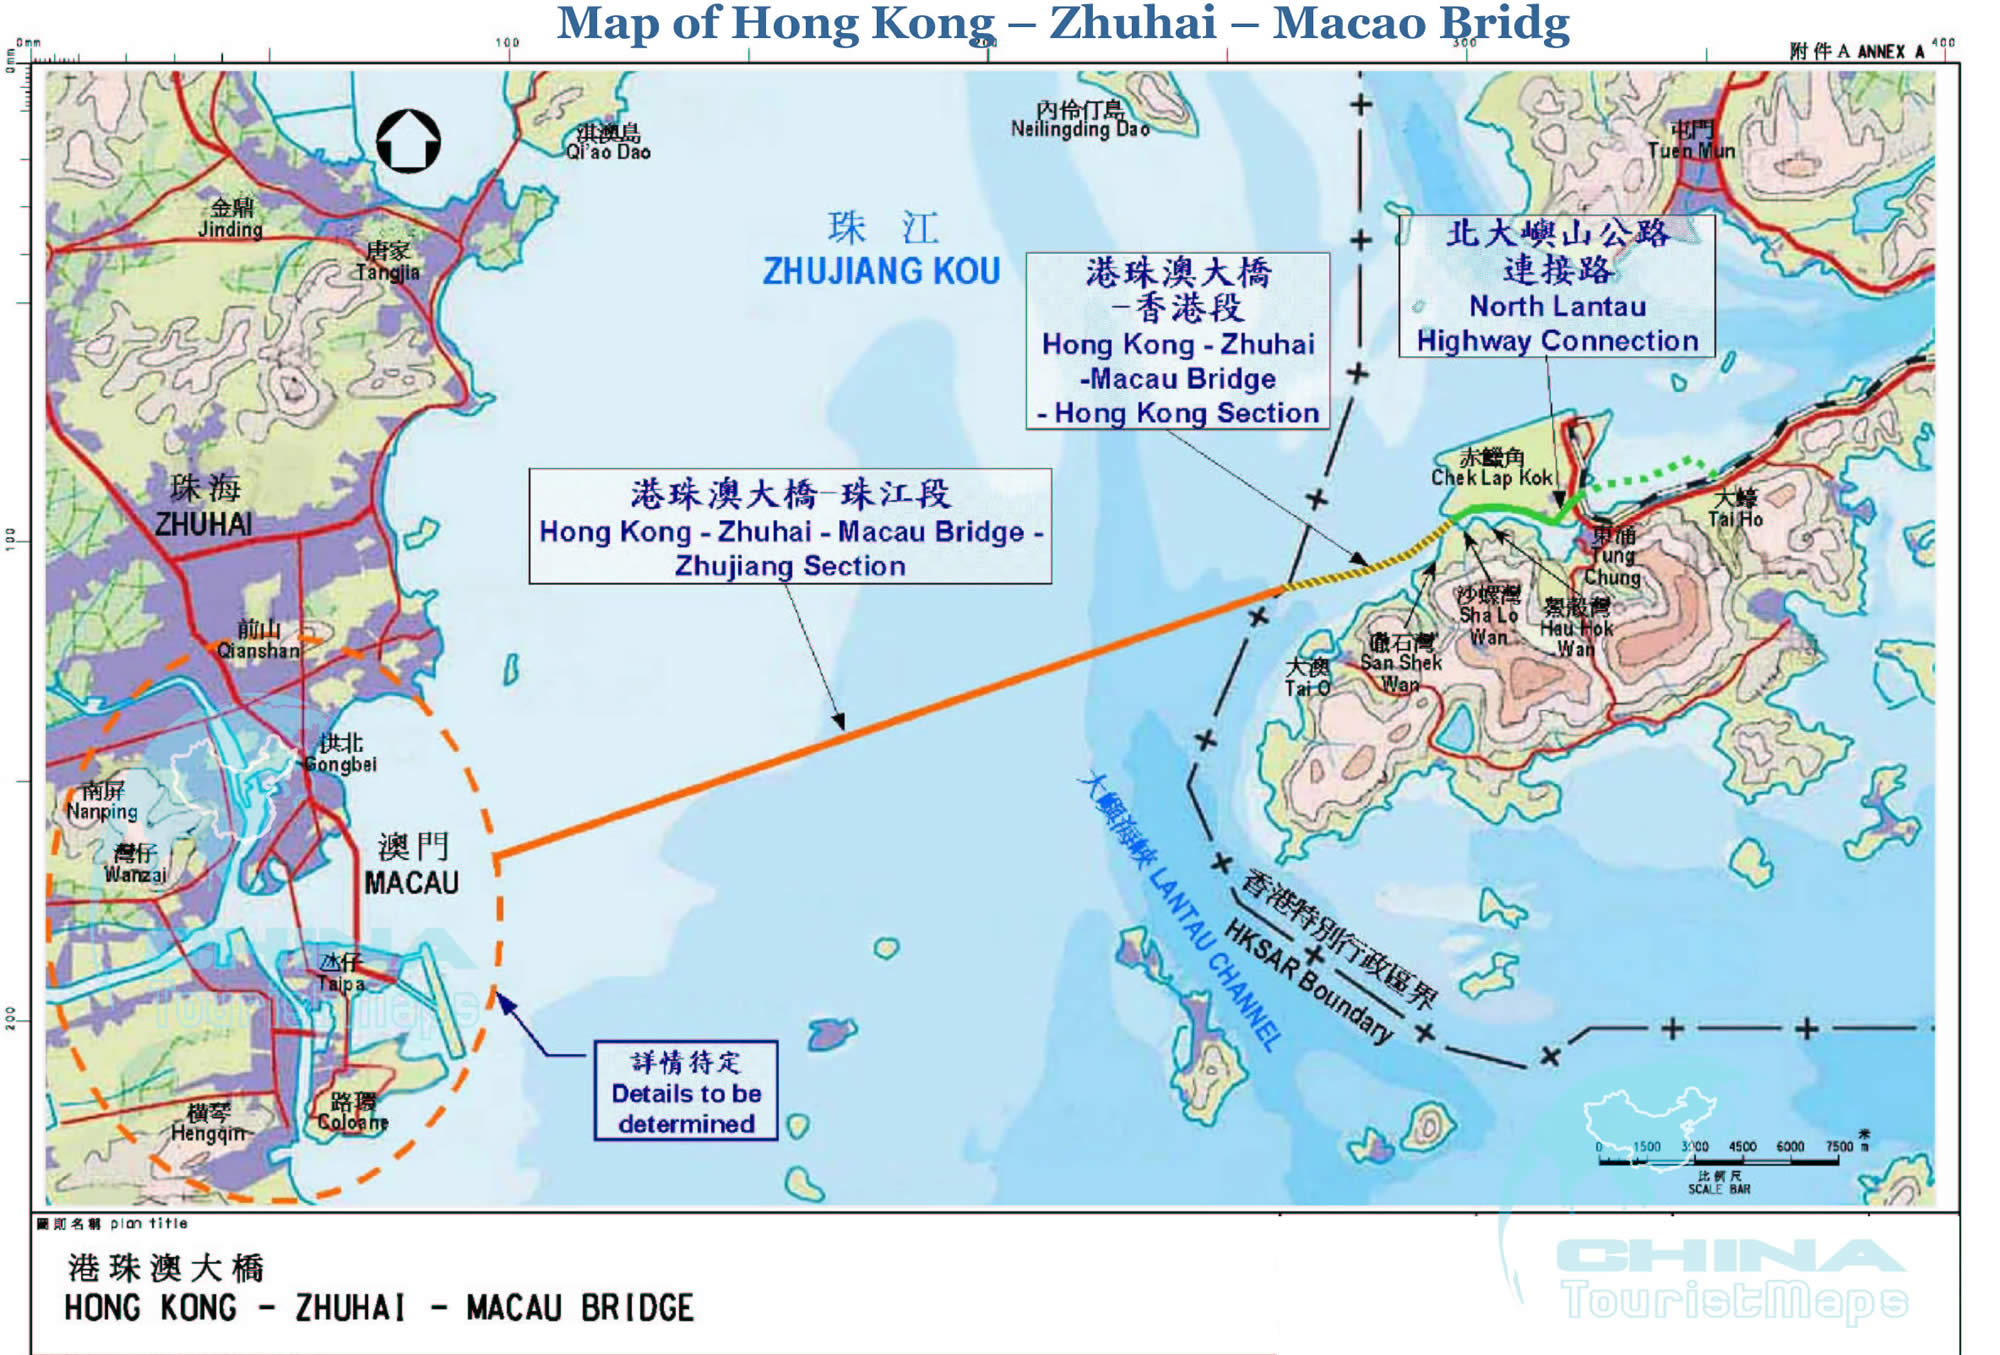 harita hong kong zhuhai makao koprusu